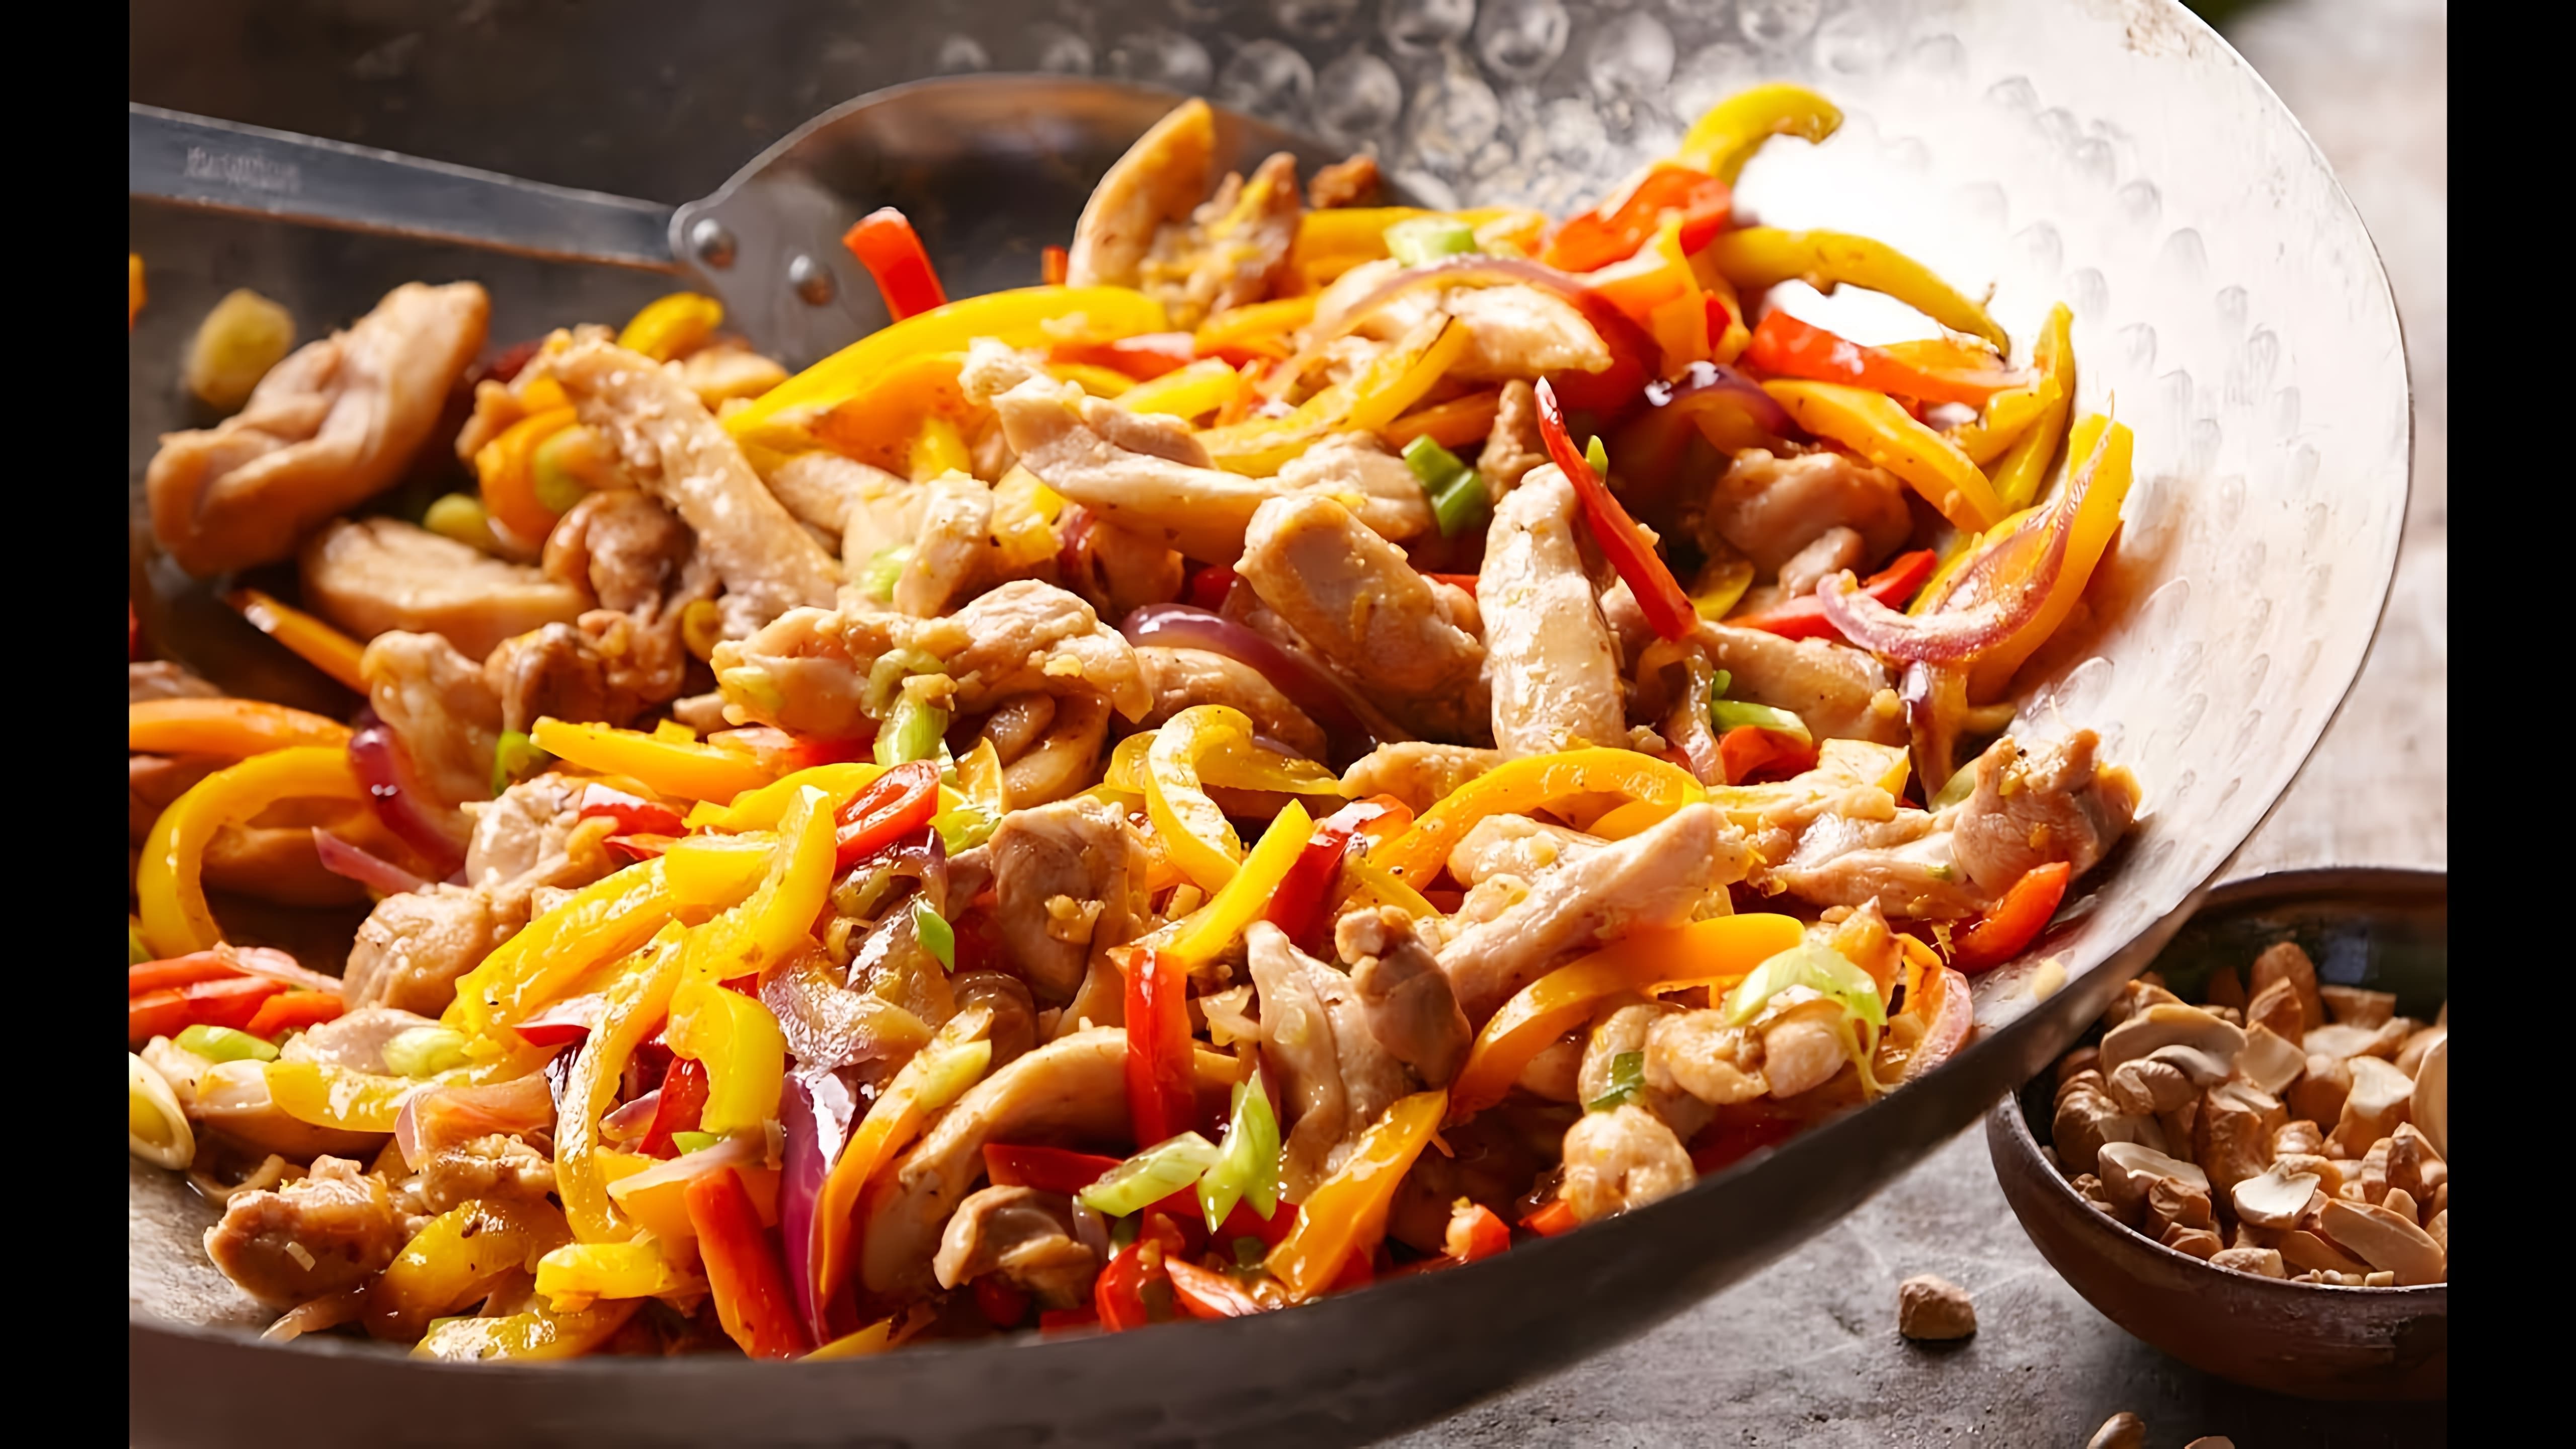 В этом видео демонстрируется рецепт приготовления курицы с болгарским перцем и фасолью по-тайски